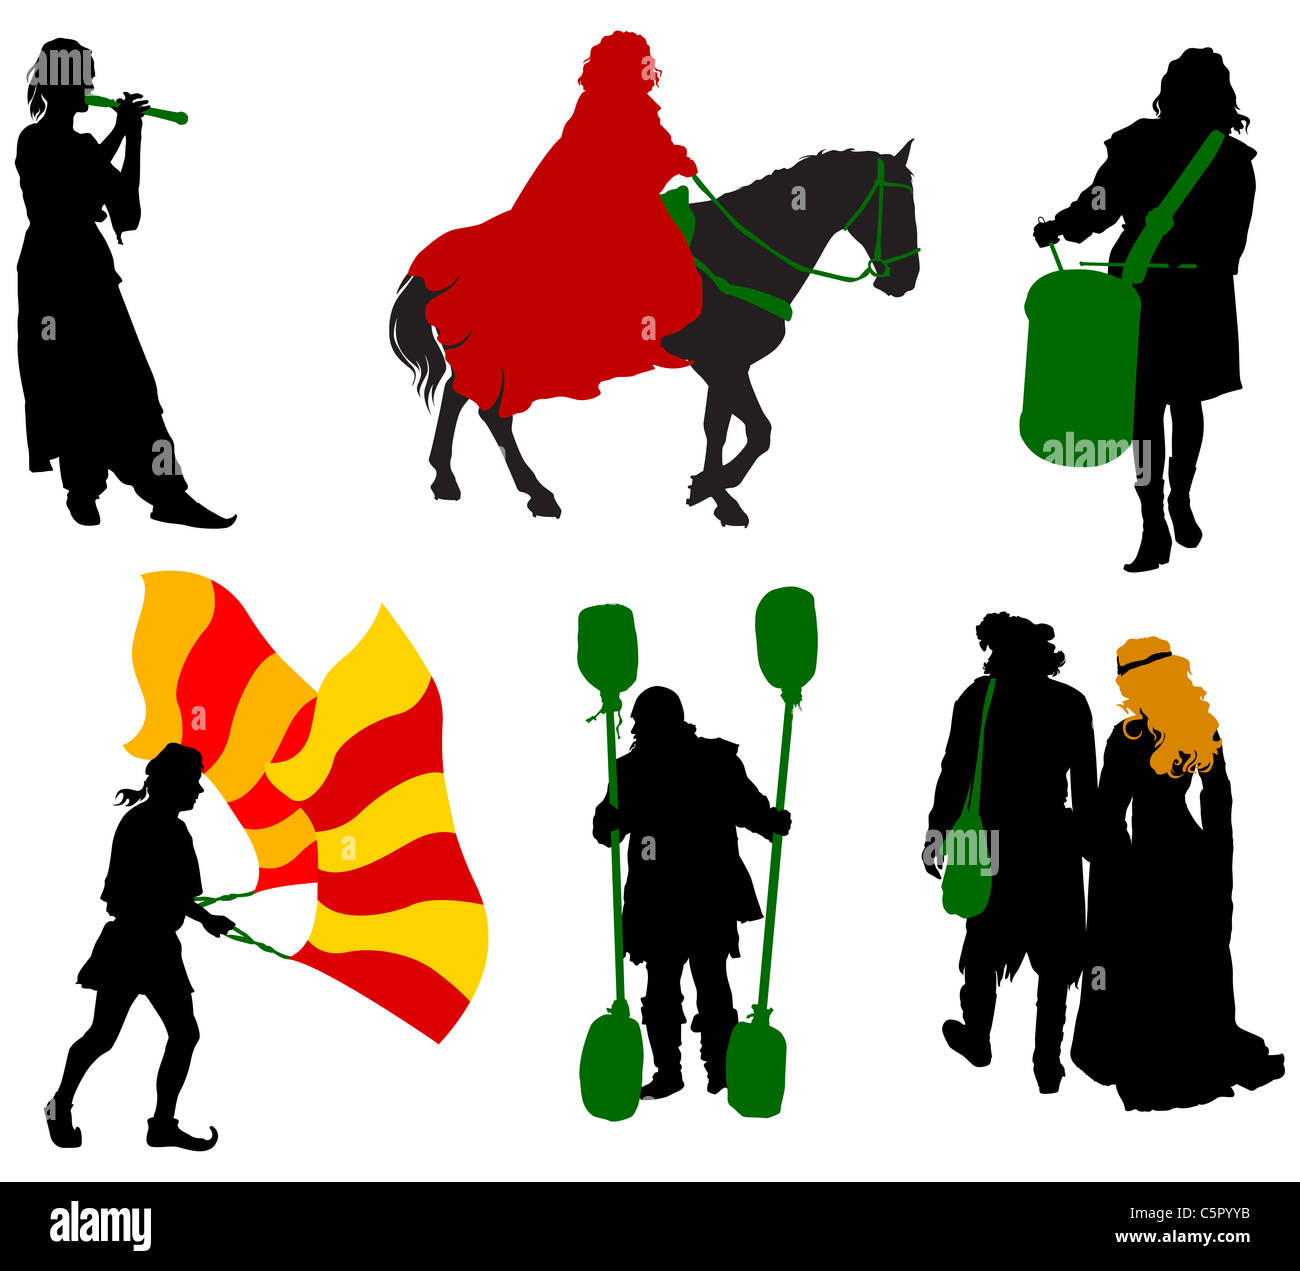 Silhouettes de personnes en costumes médiévaux. Knight, batteur, musicien, jongleur, nobles Banque D'Images